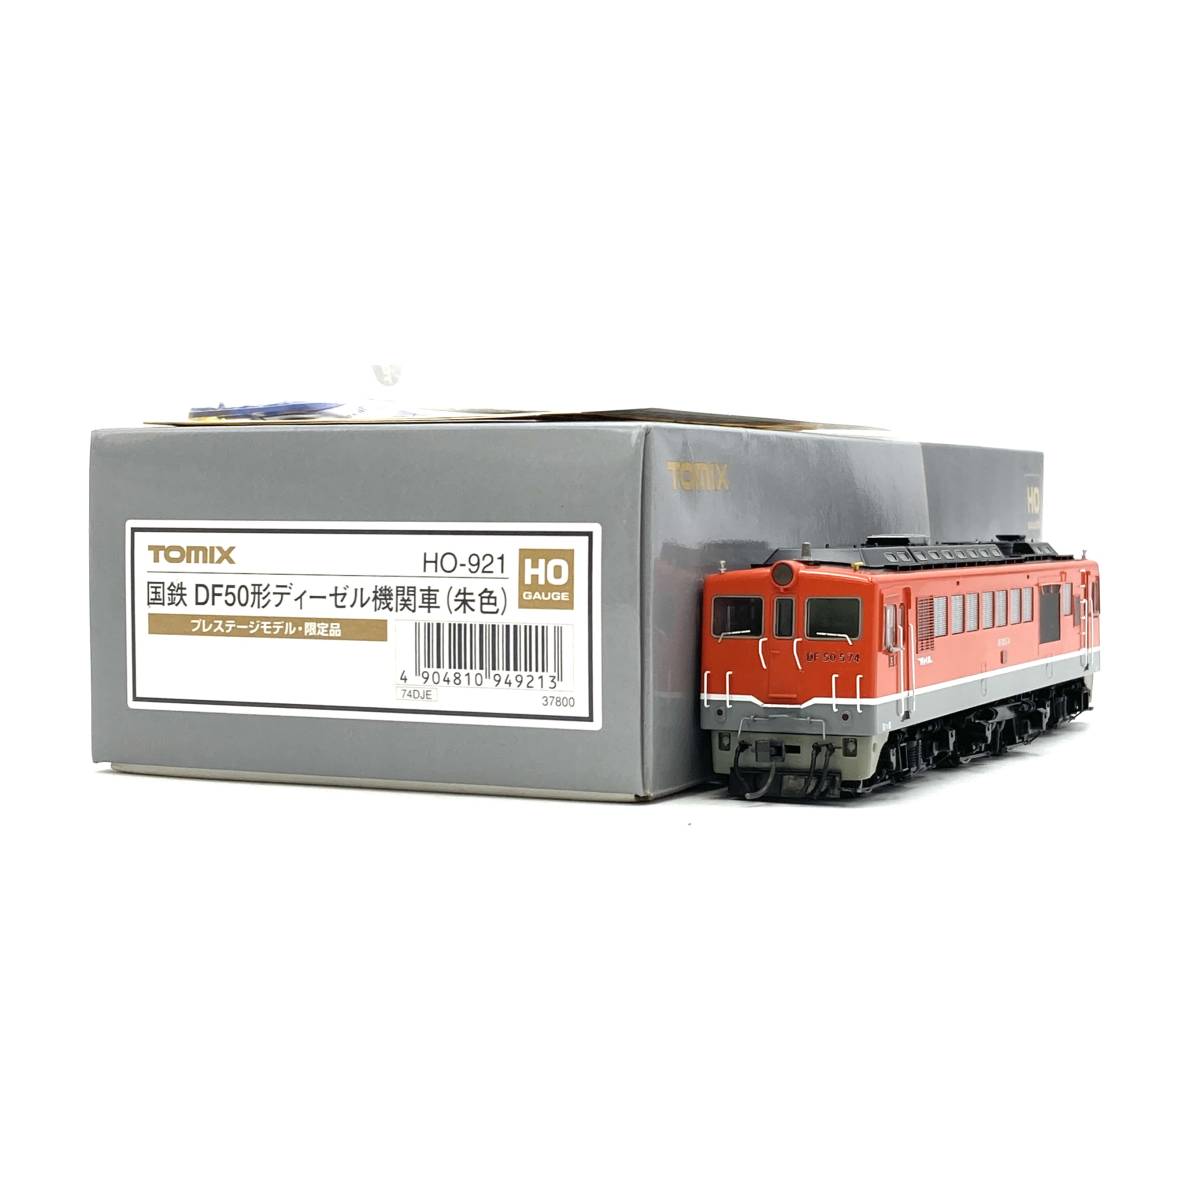 良品まとめ売り 鉄道模型『TOMIX HOゲージ HO-921 国鉄 DF50形